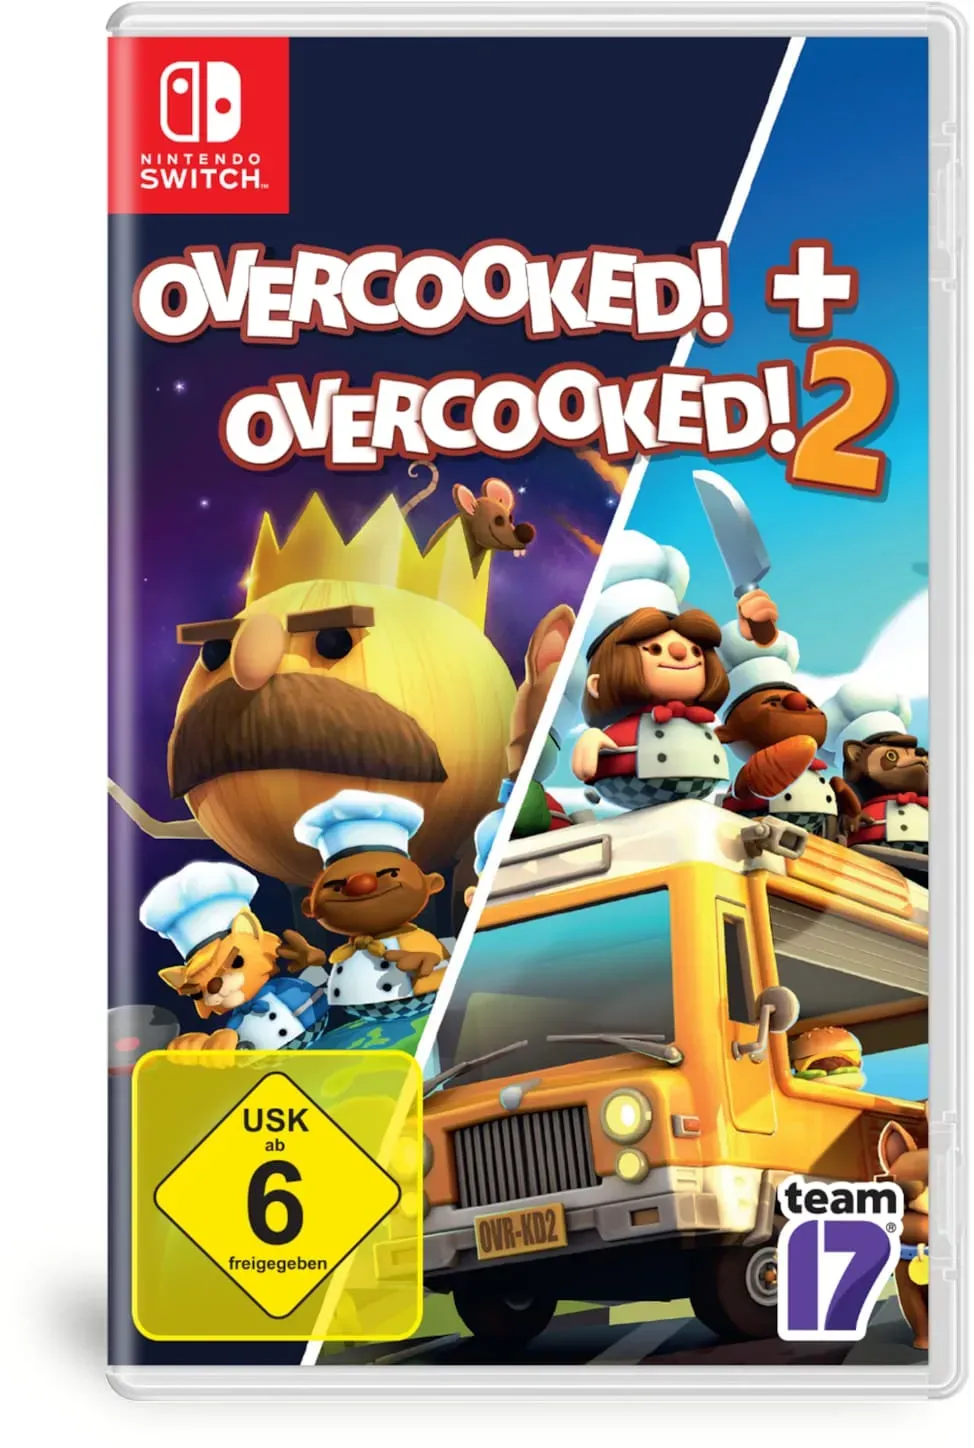 Overcooked 1 + Overcooked 2